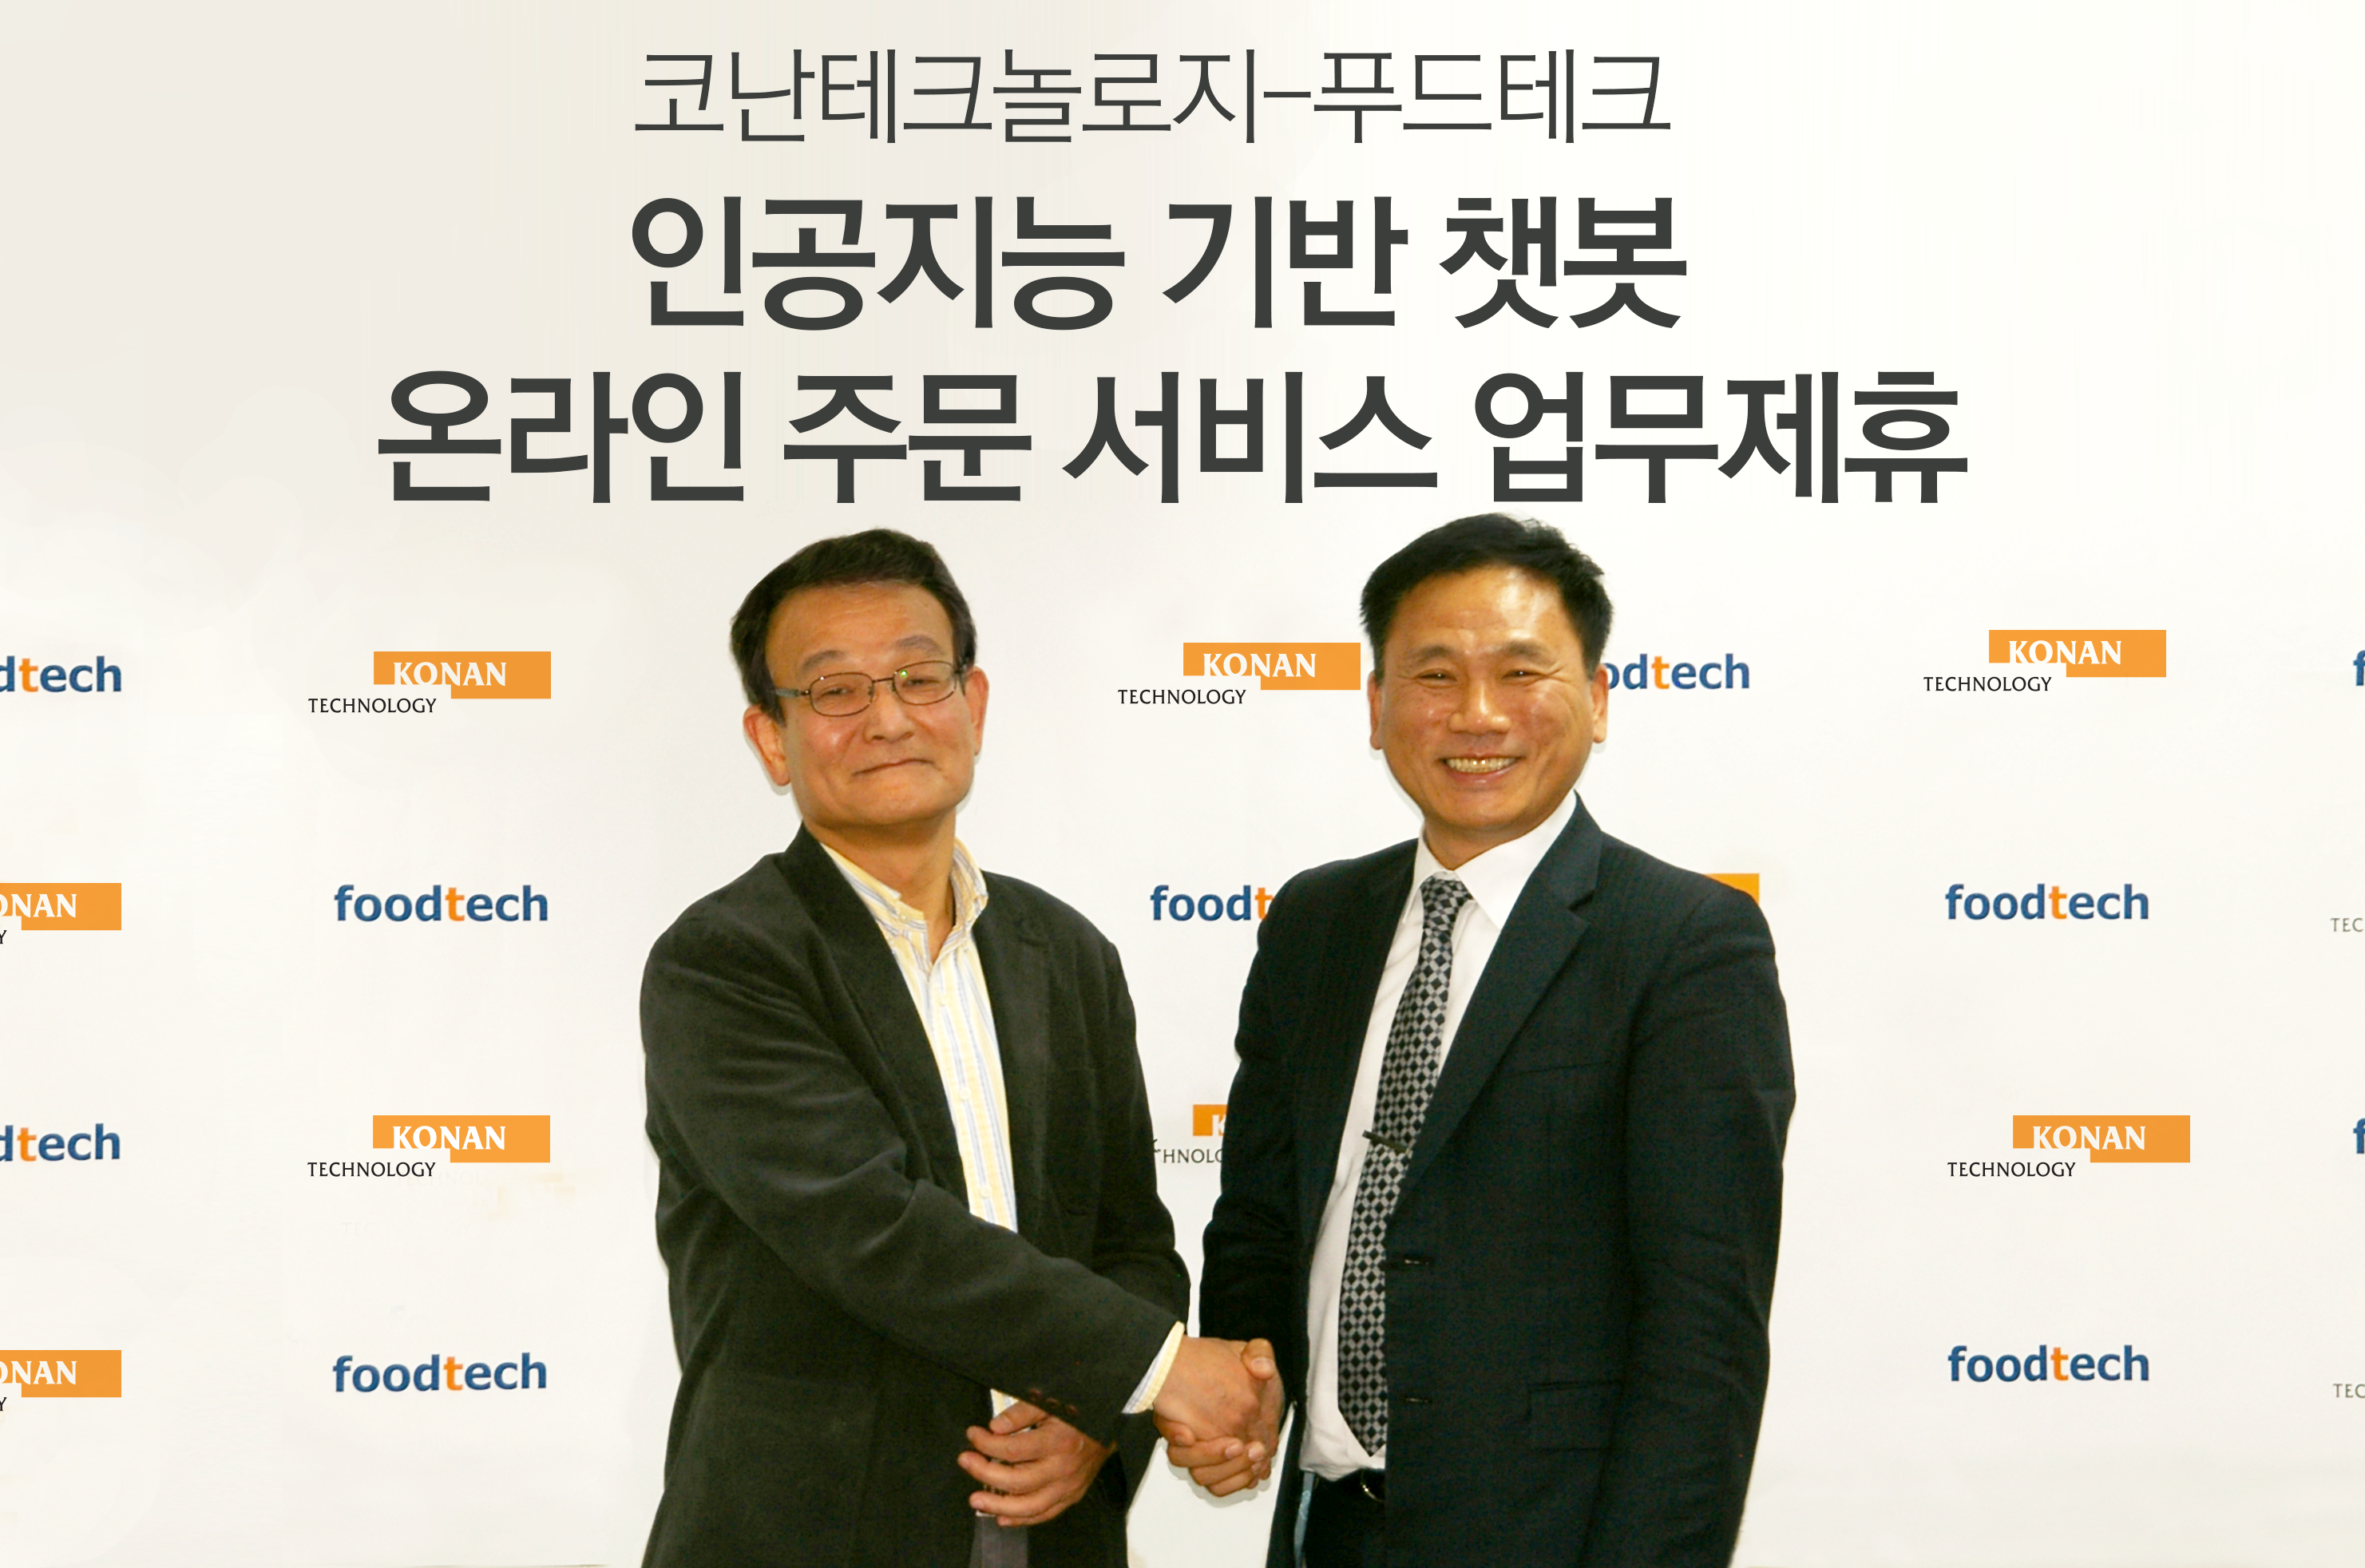 ▲  (왼쪽부터) 김영섬 코난테크놀로지 대표, 강병태 푸드테크 대표